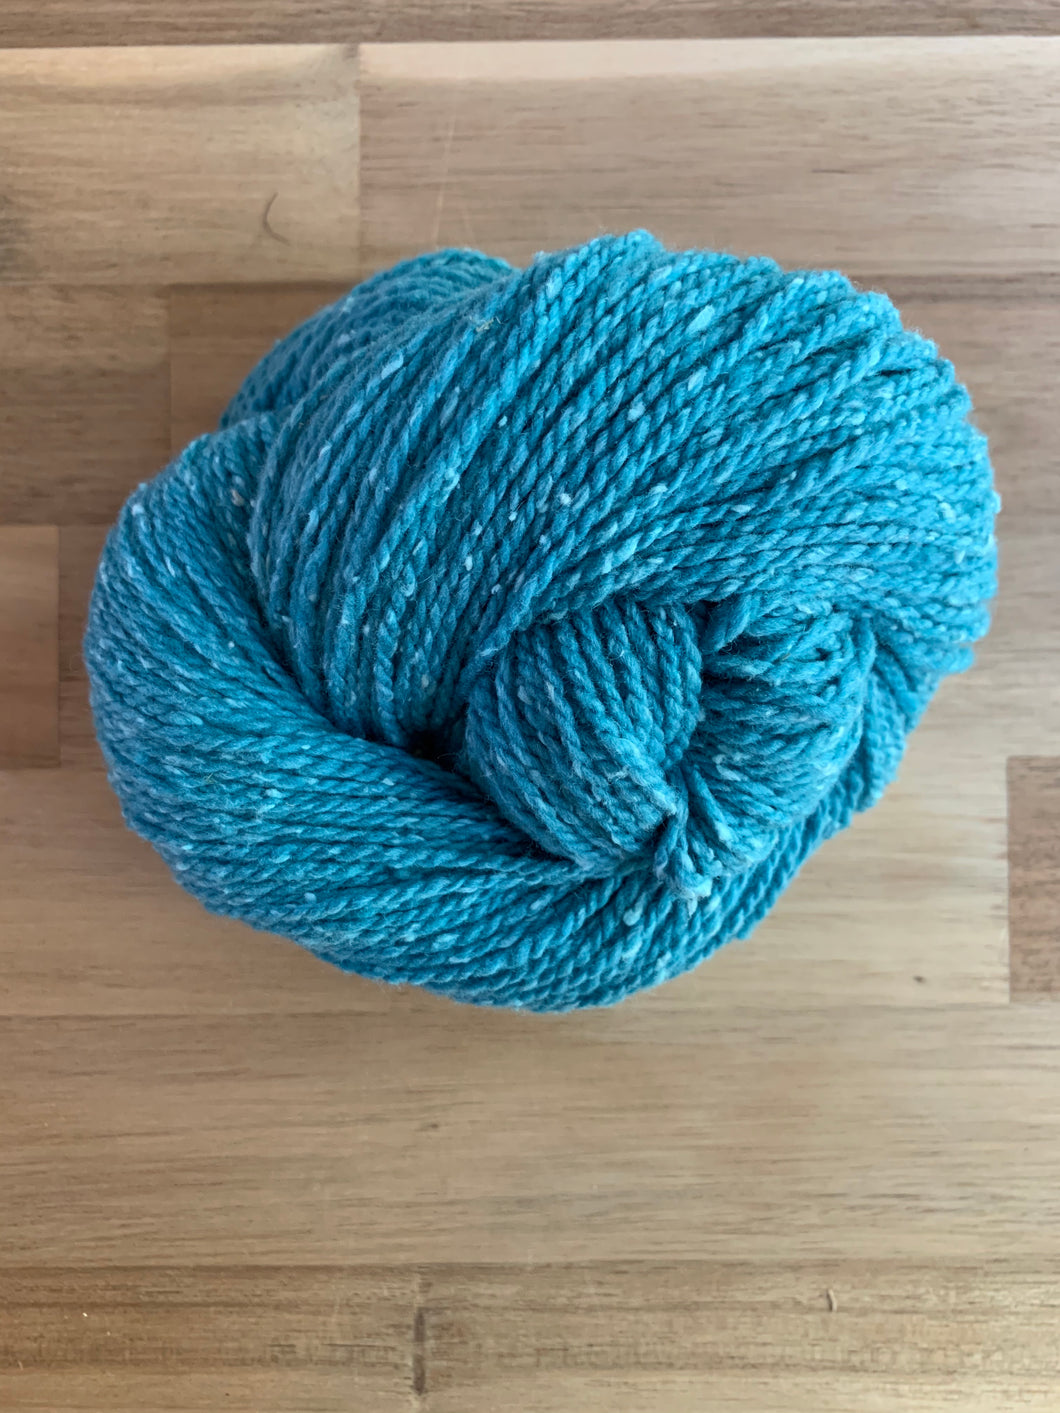 A skein of blue yarn called Aqua.